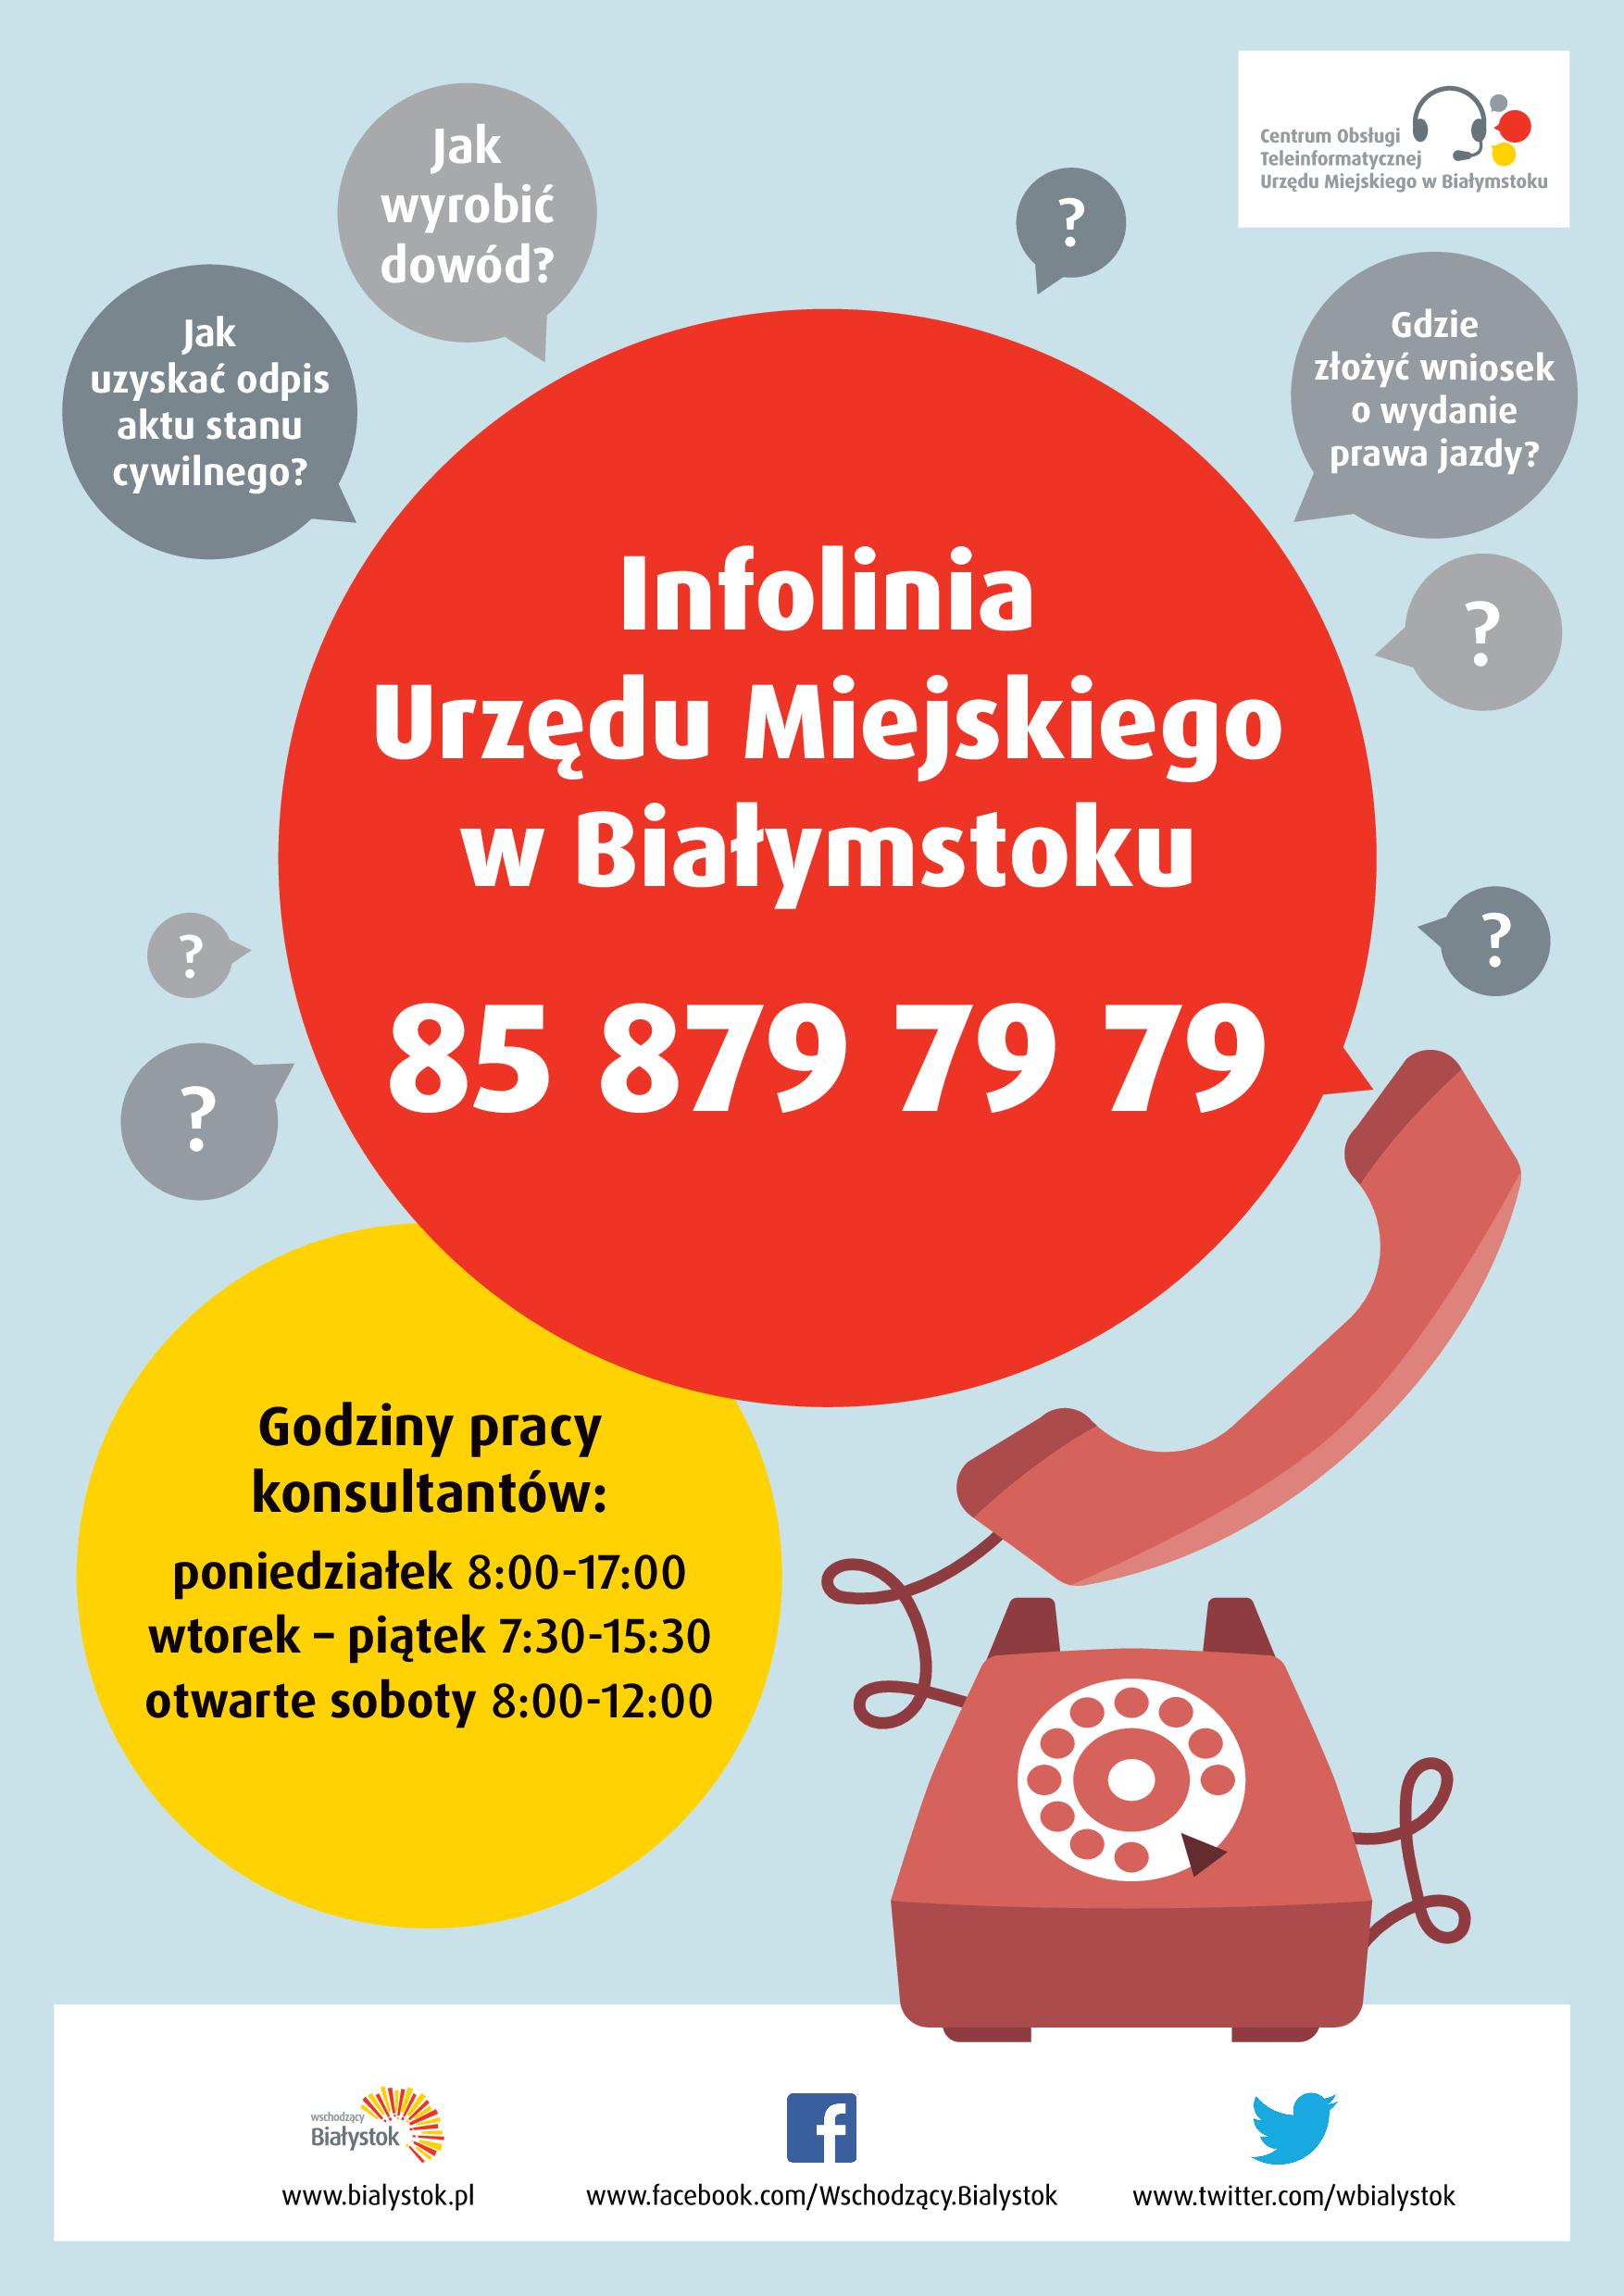 Infolinia Urządu Miejskiego w Białymstoku tel. 85 879 79 79